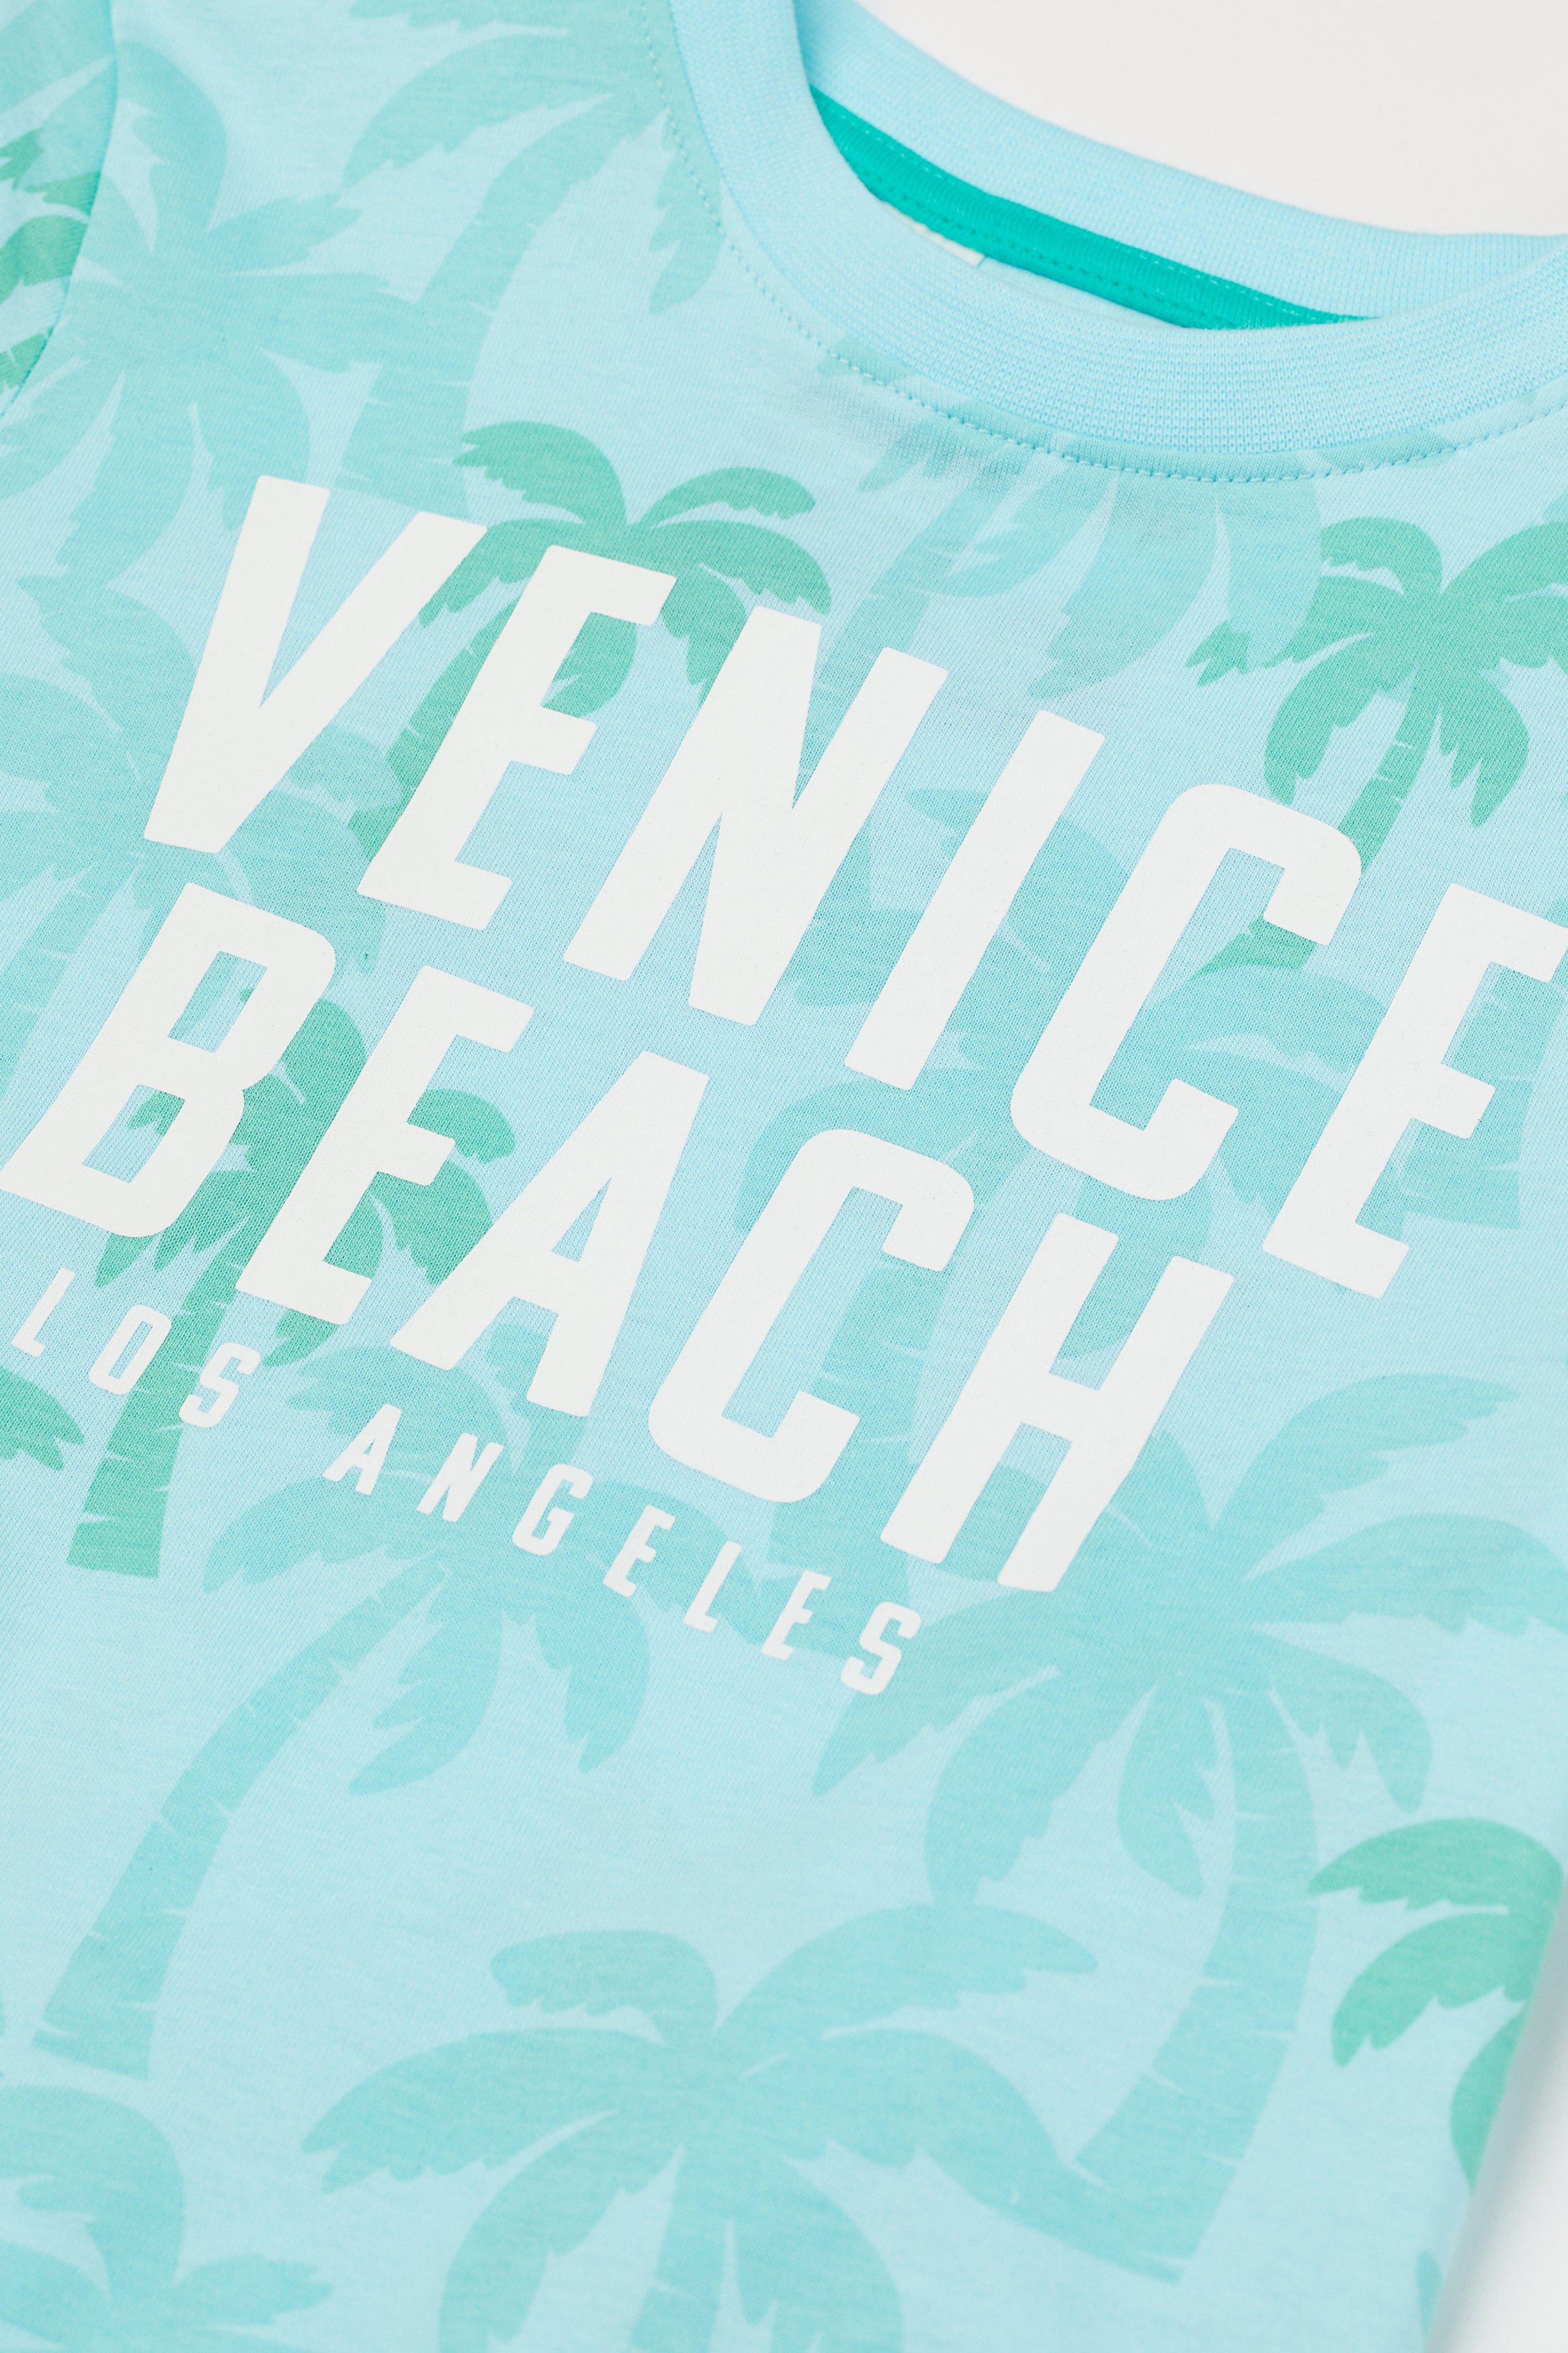 T-shirt Venice Beach - THEKIDSKREW